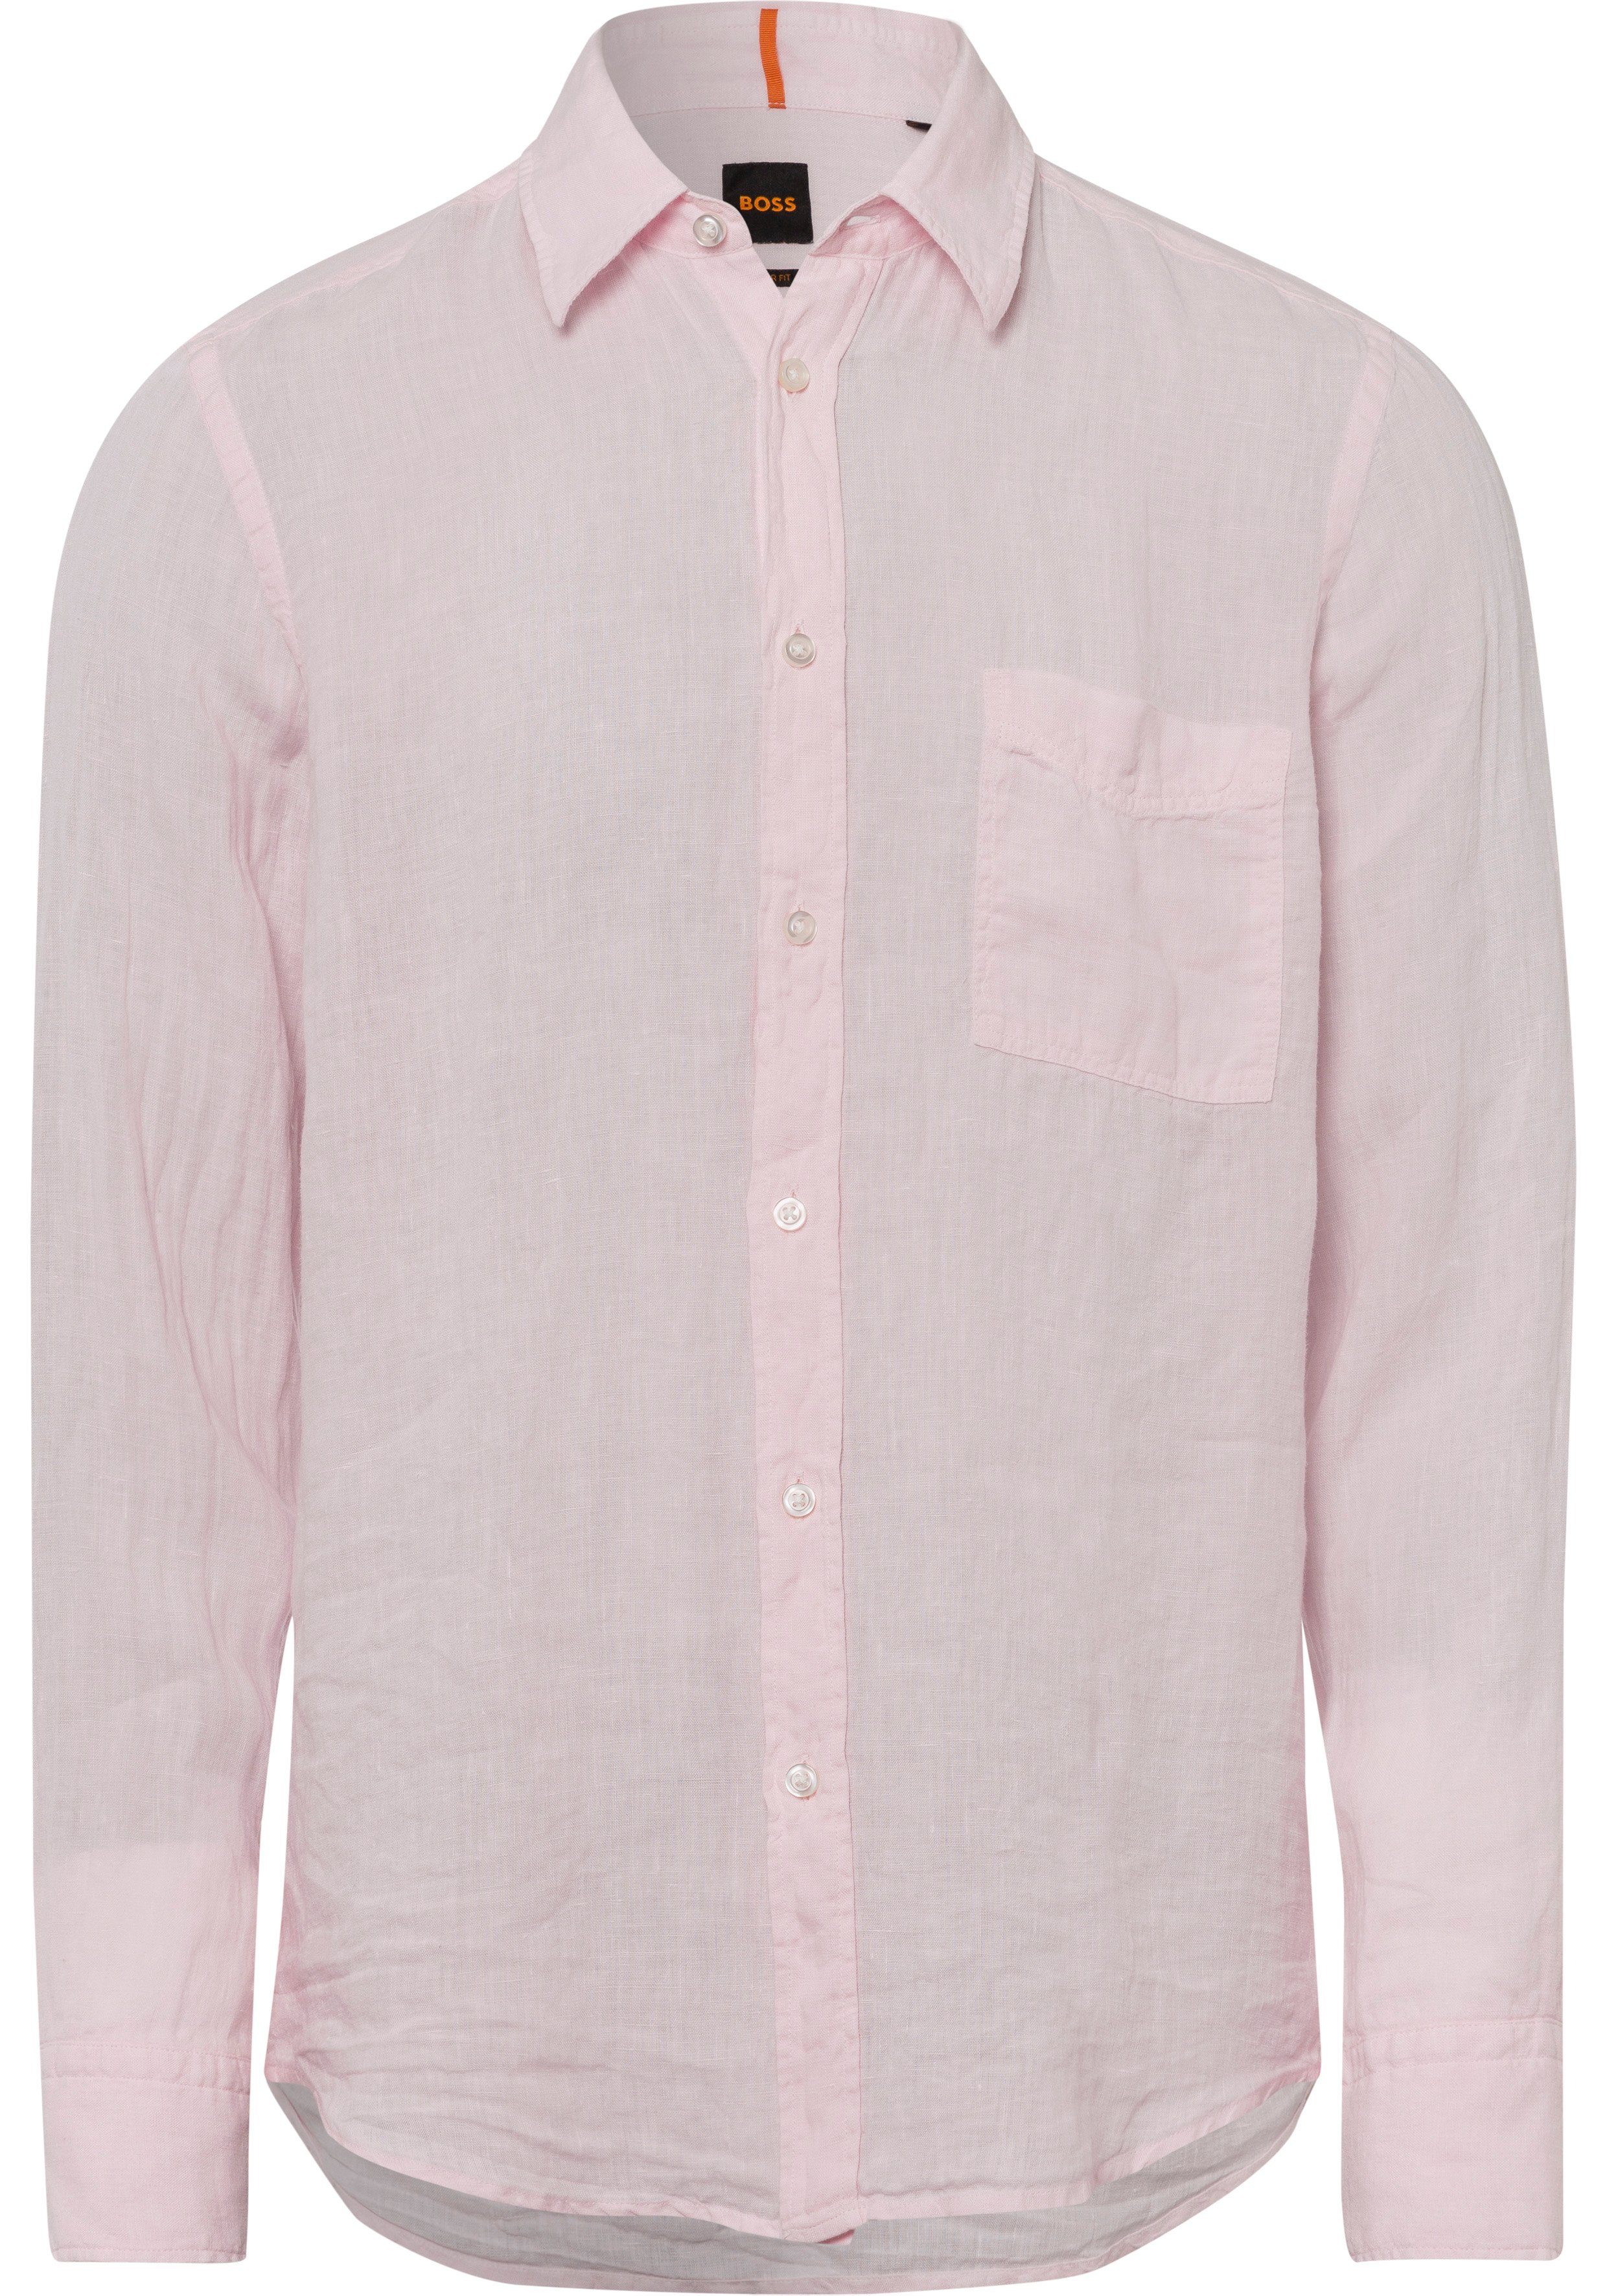 BOSS ORANGE Langarmshirt mit BOSS-Kontrastdetails 682 Light/Pastel Pink